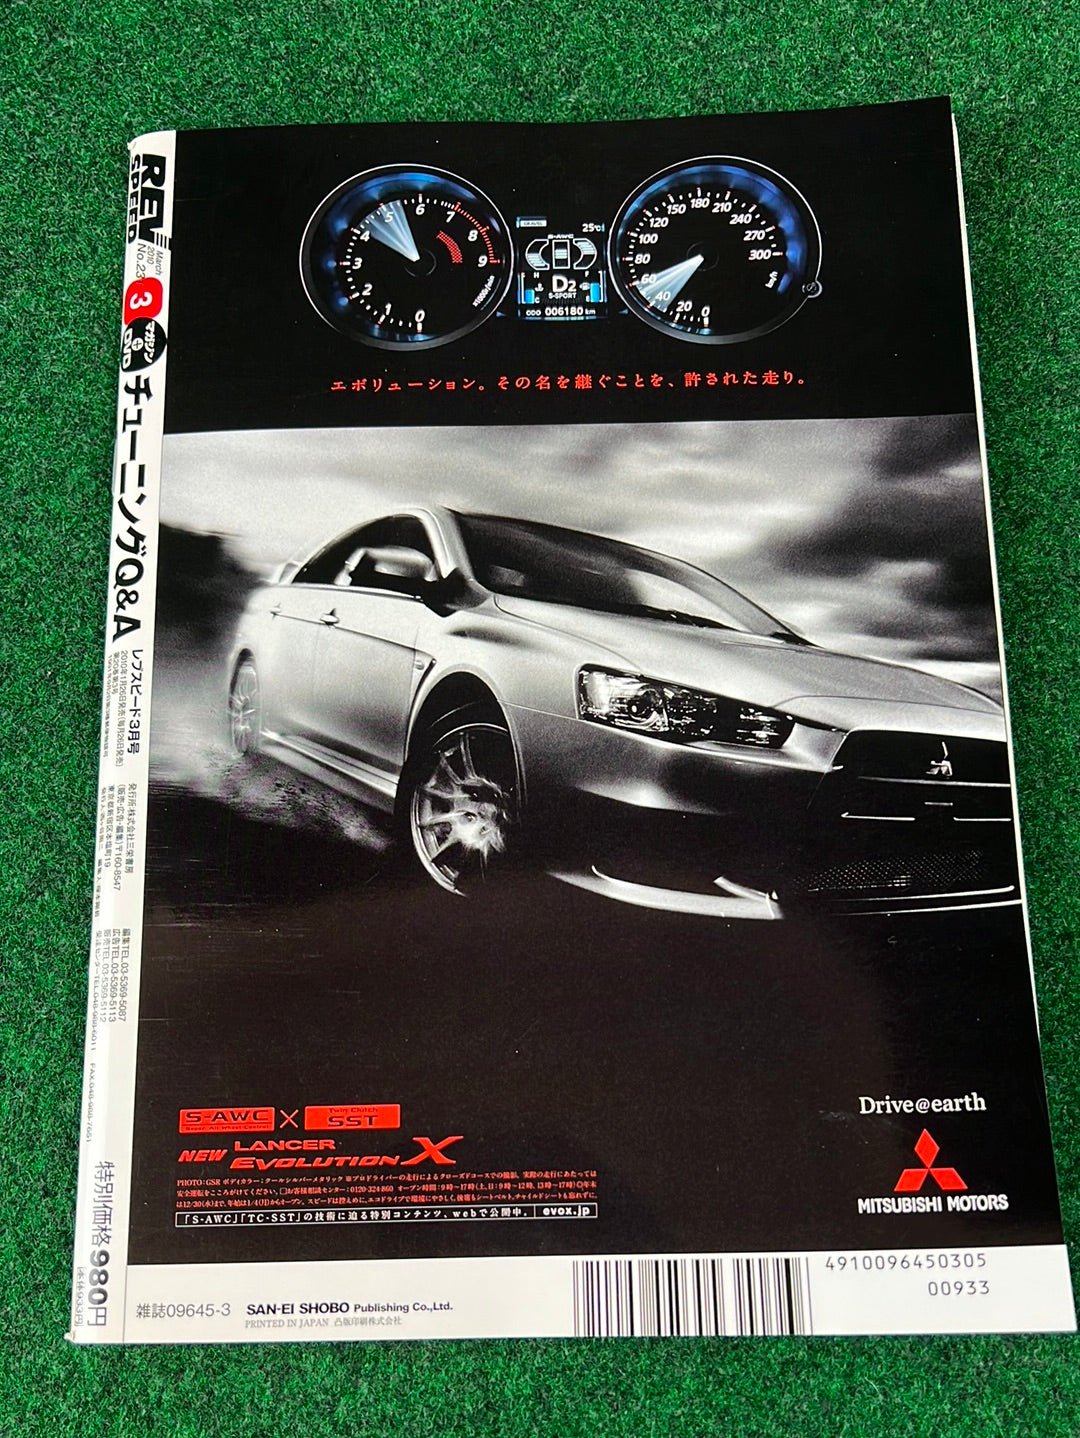 REVSPEED Magazine & DVD - Vol. 231 March 2010